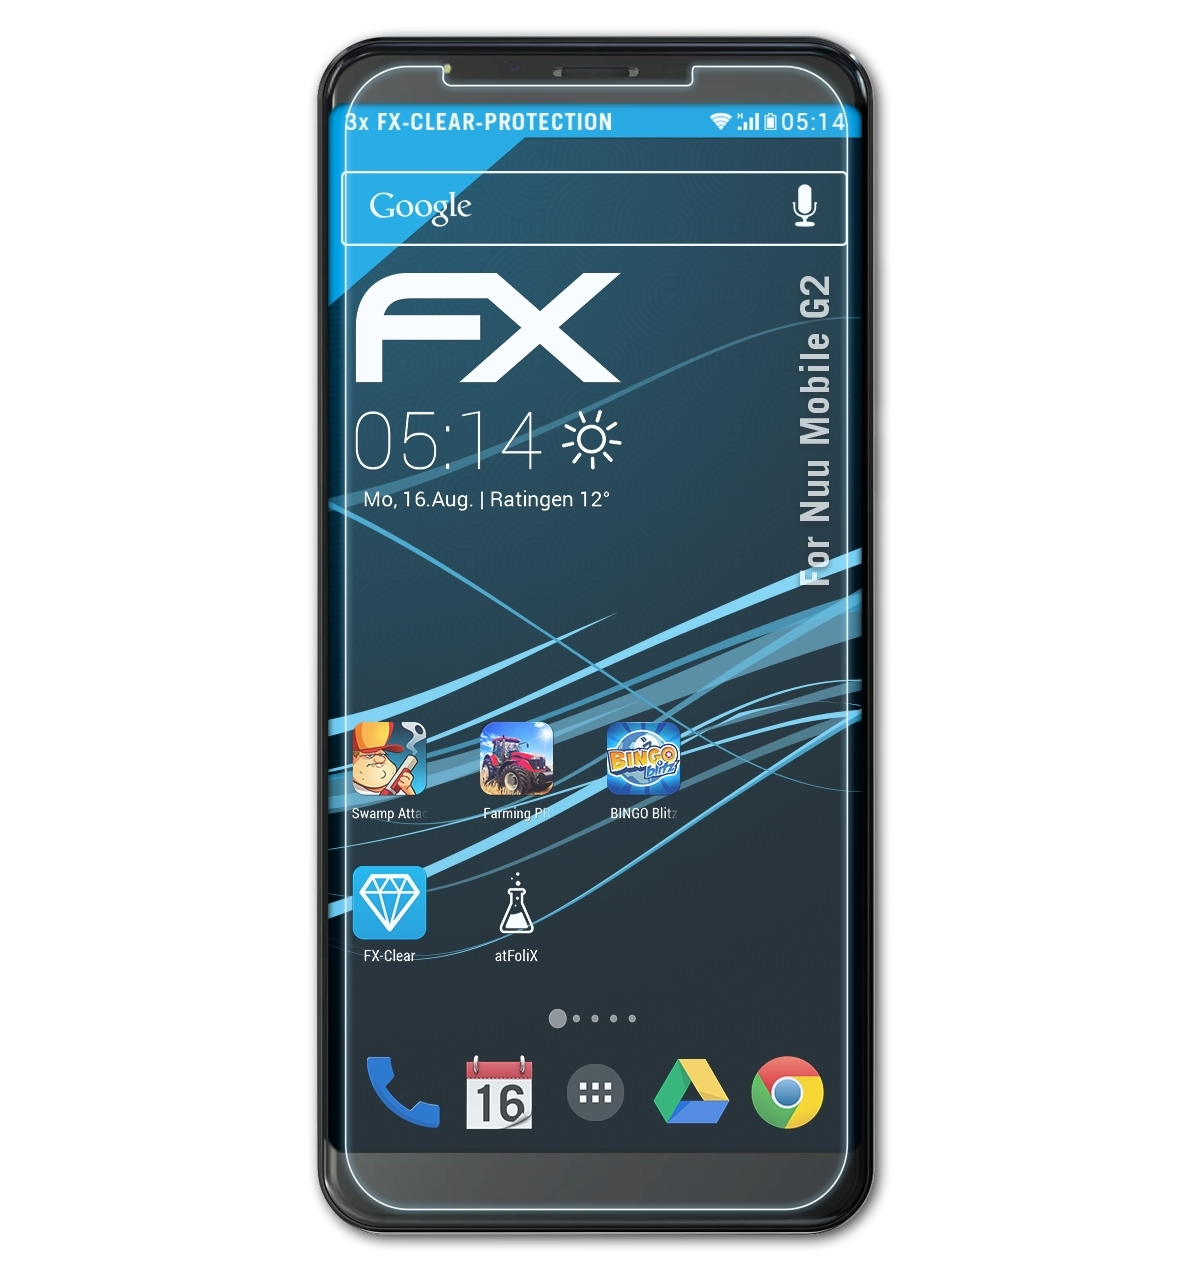 Displayschutz(für Mobile ATFOLIX Nuu 3x FX-Clear G2)